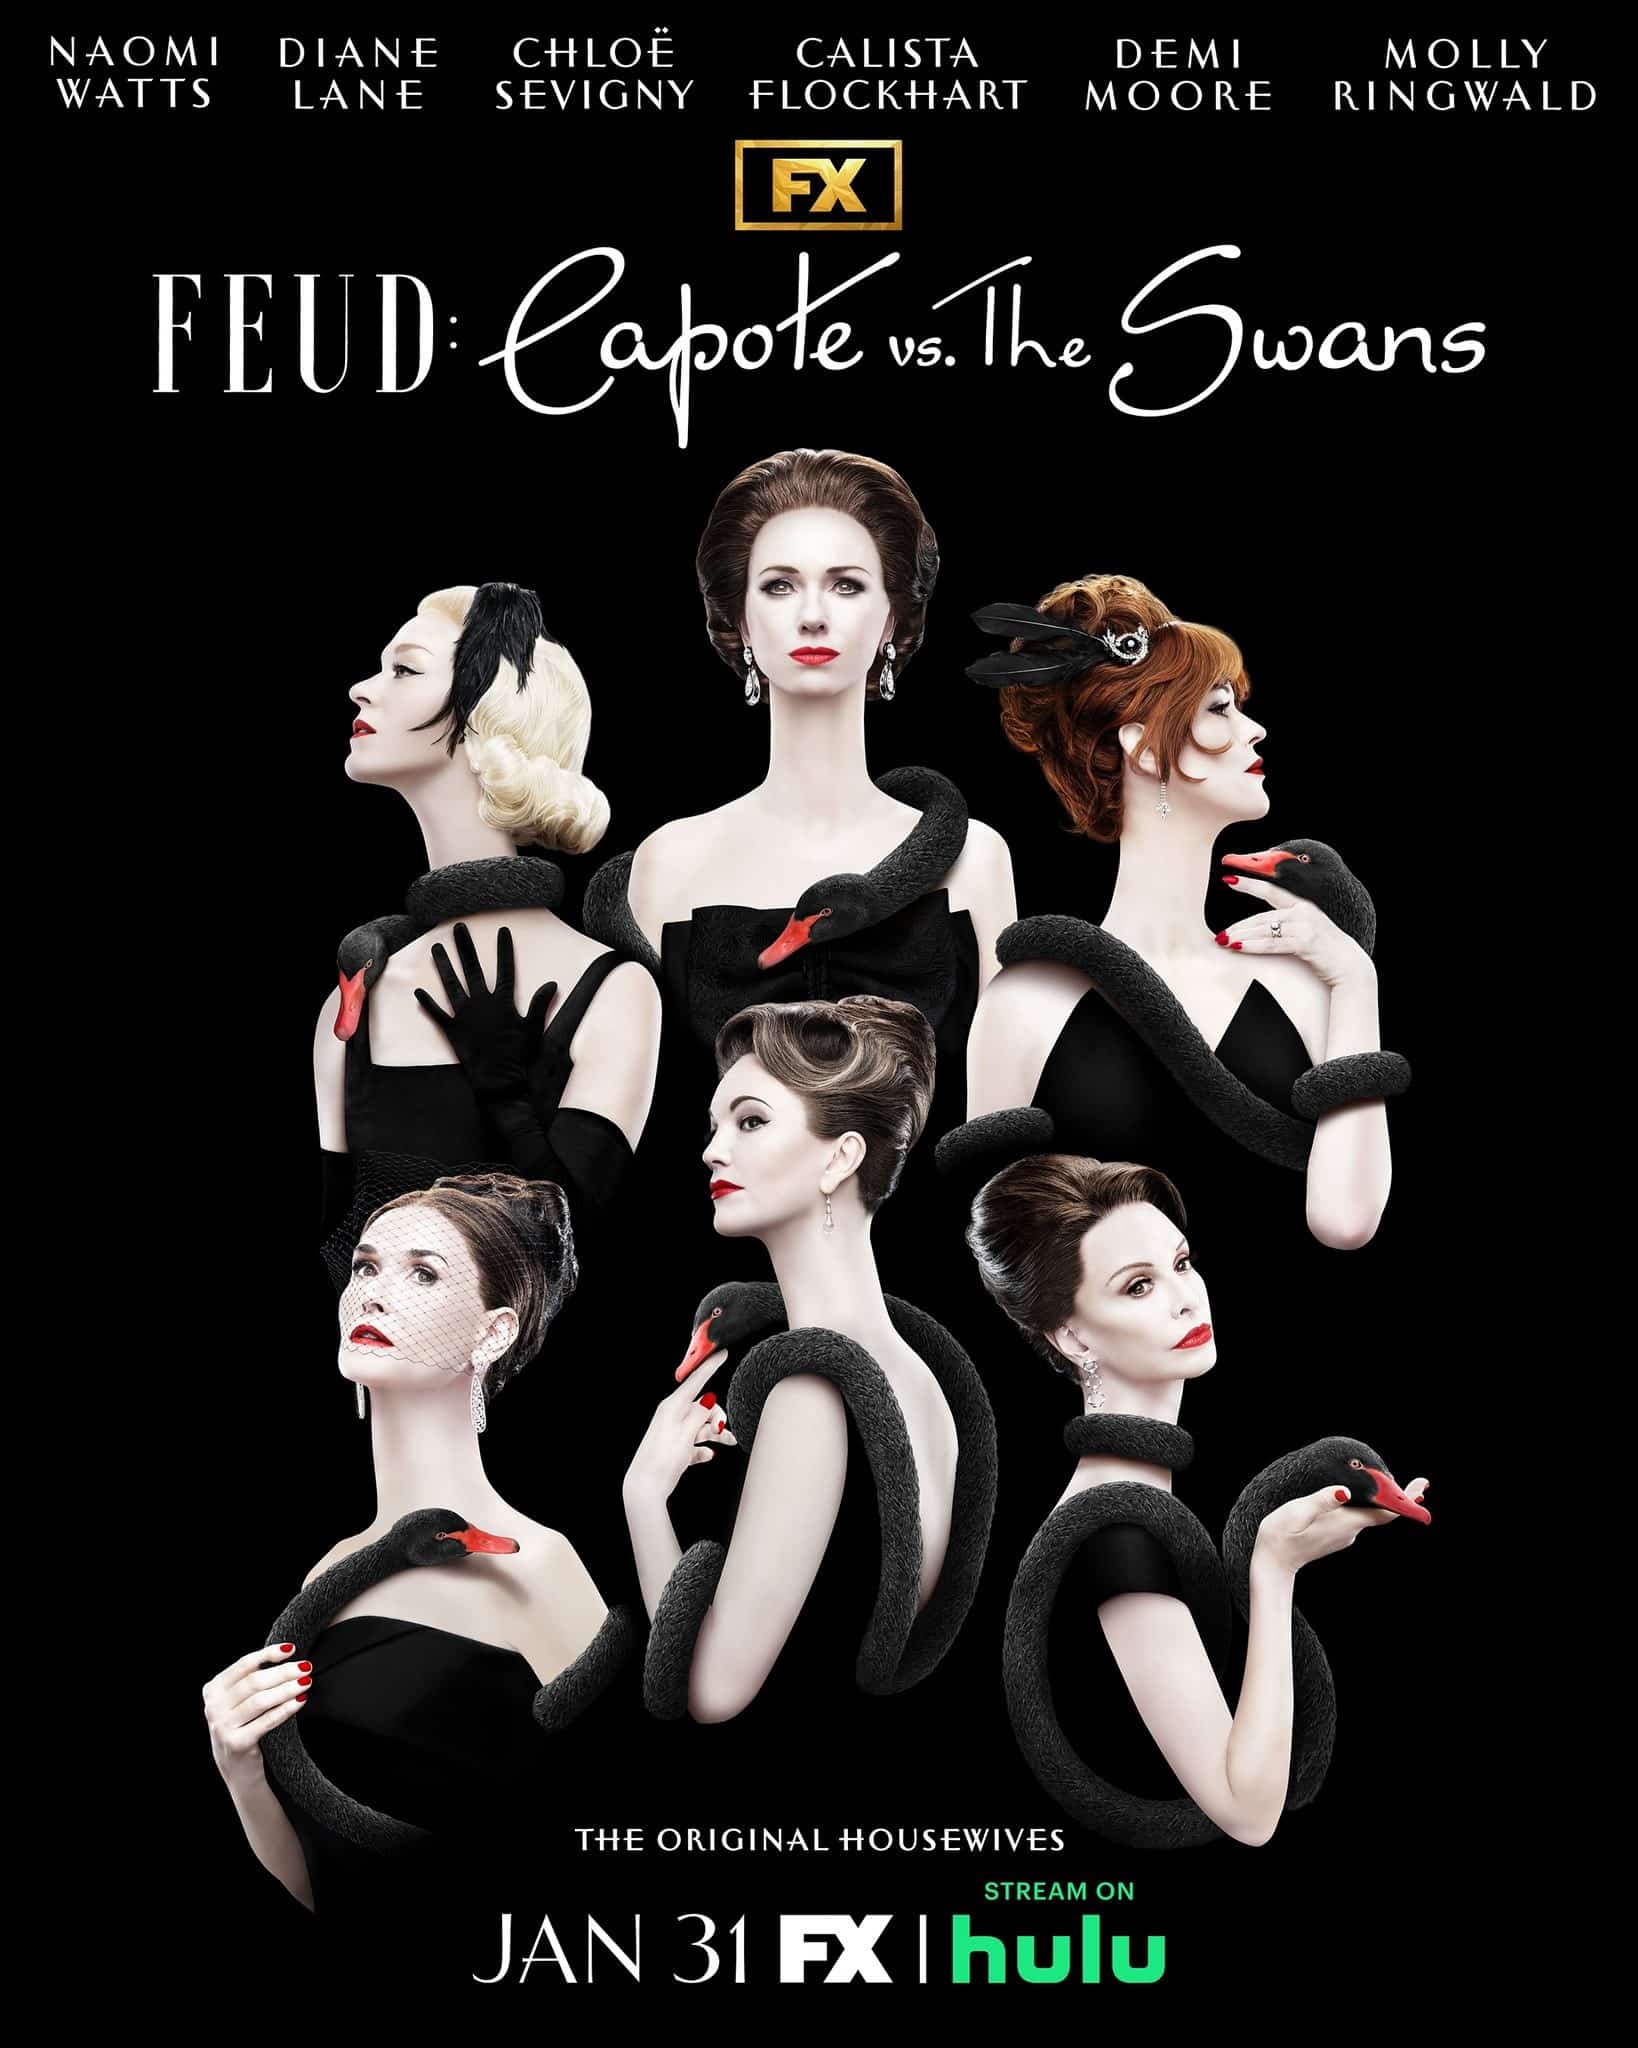 Feud-Capote-vs-The-Swans 7 anos depois, 2ª temporada de 'Feud' ganha data de lançamento